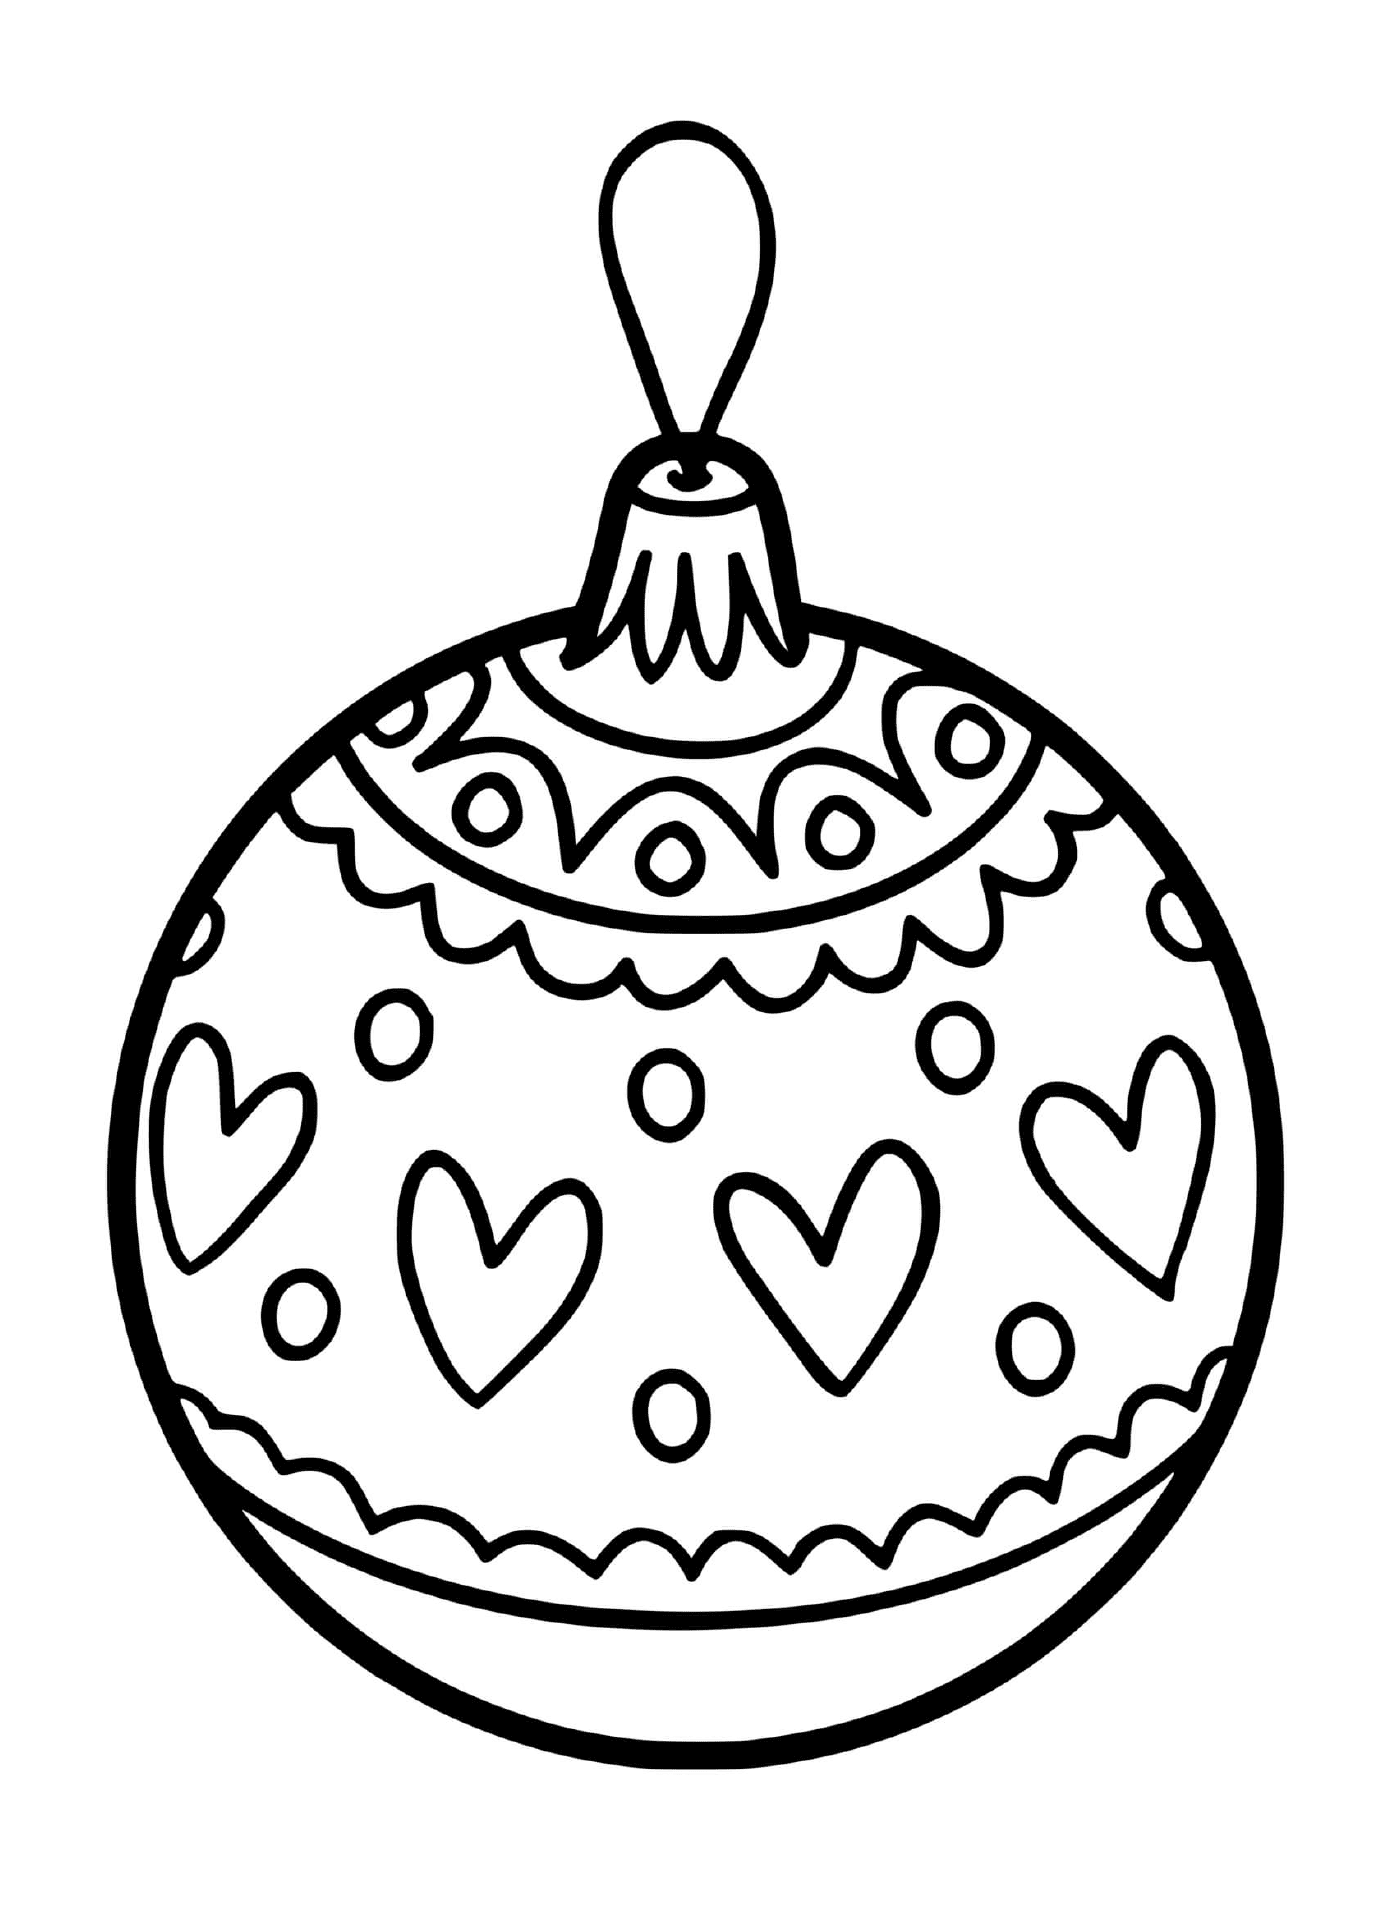  Ein Weihnachtsball für einen herzförmigen Baum 